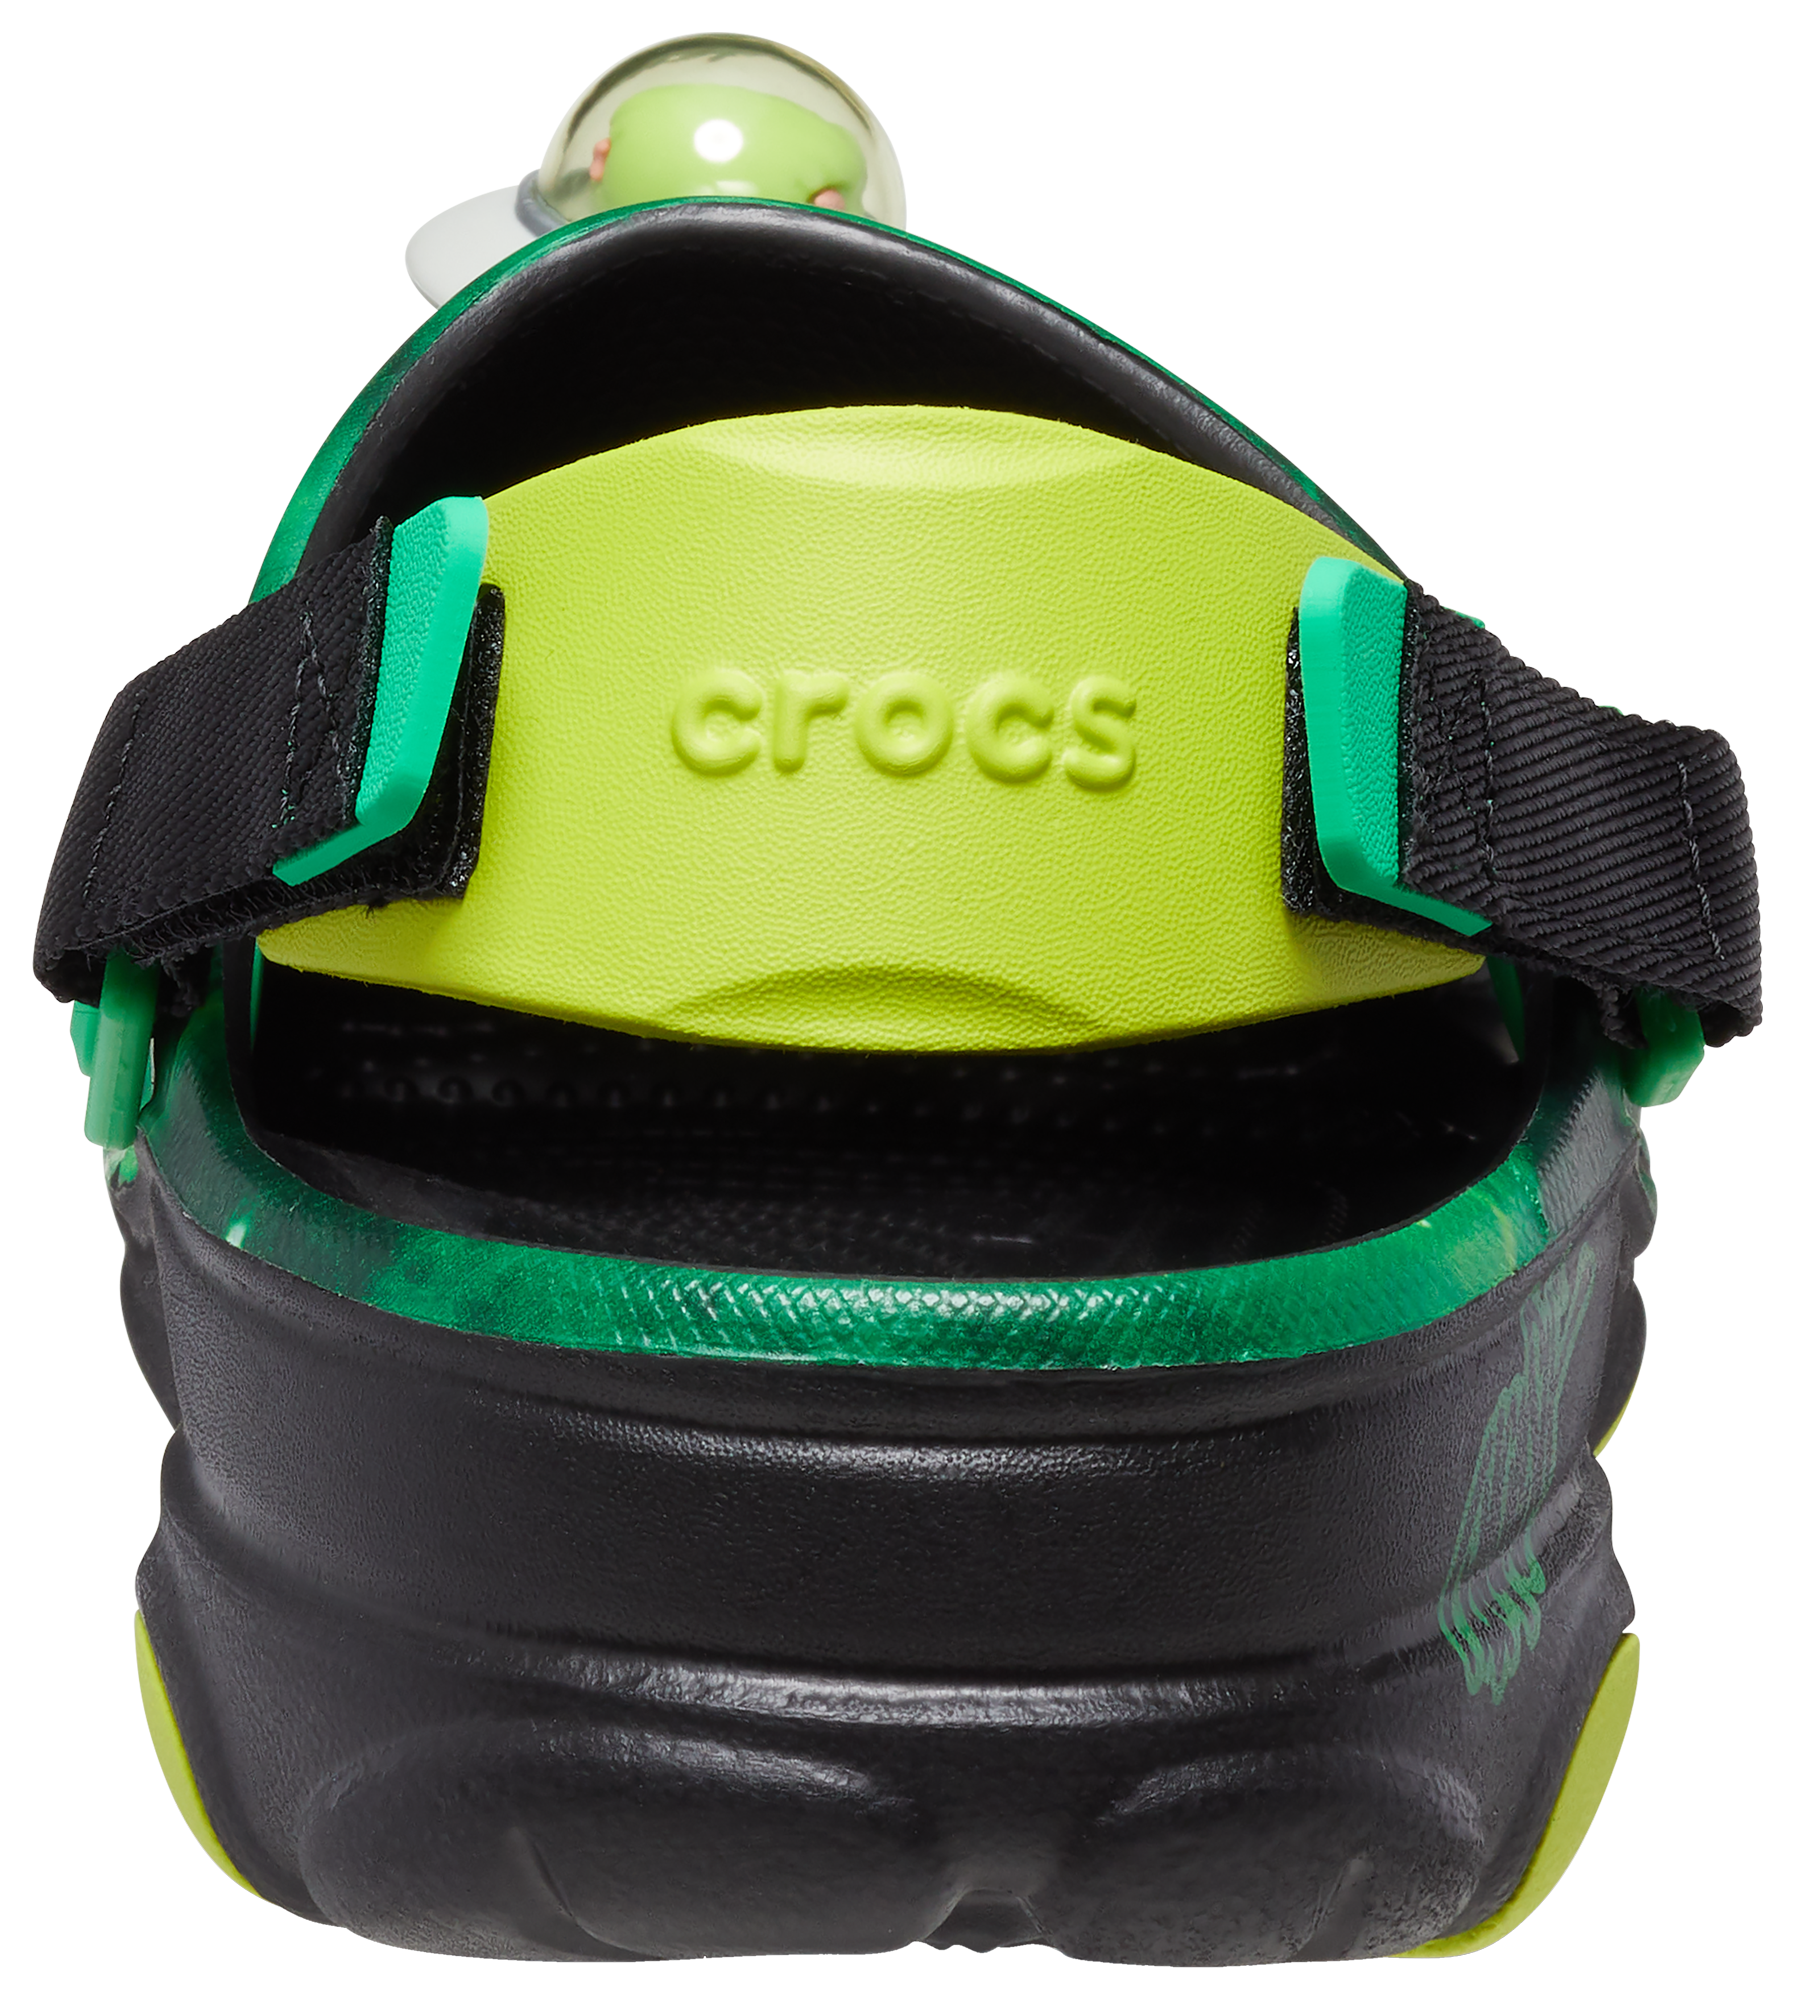 Crocs Ron English WHIN All-Terrain Clog